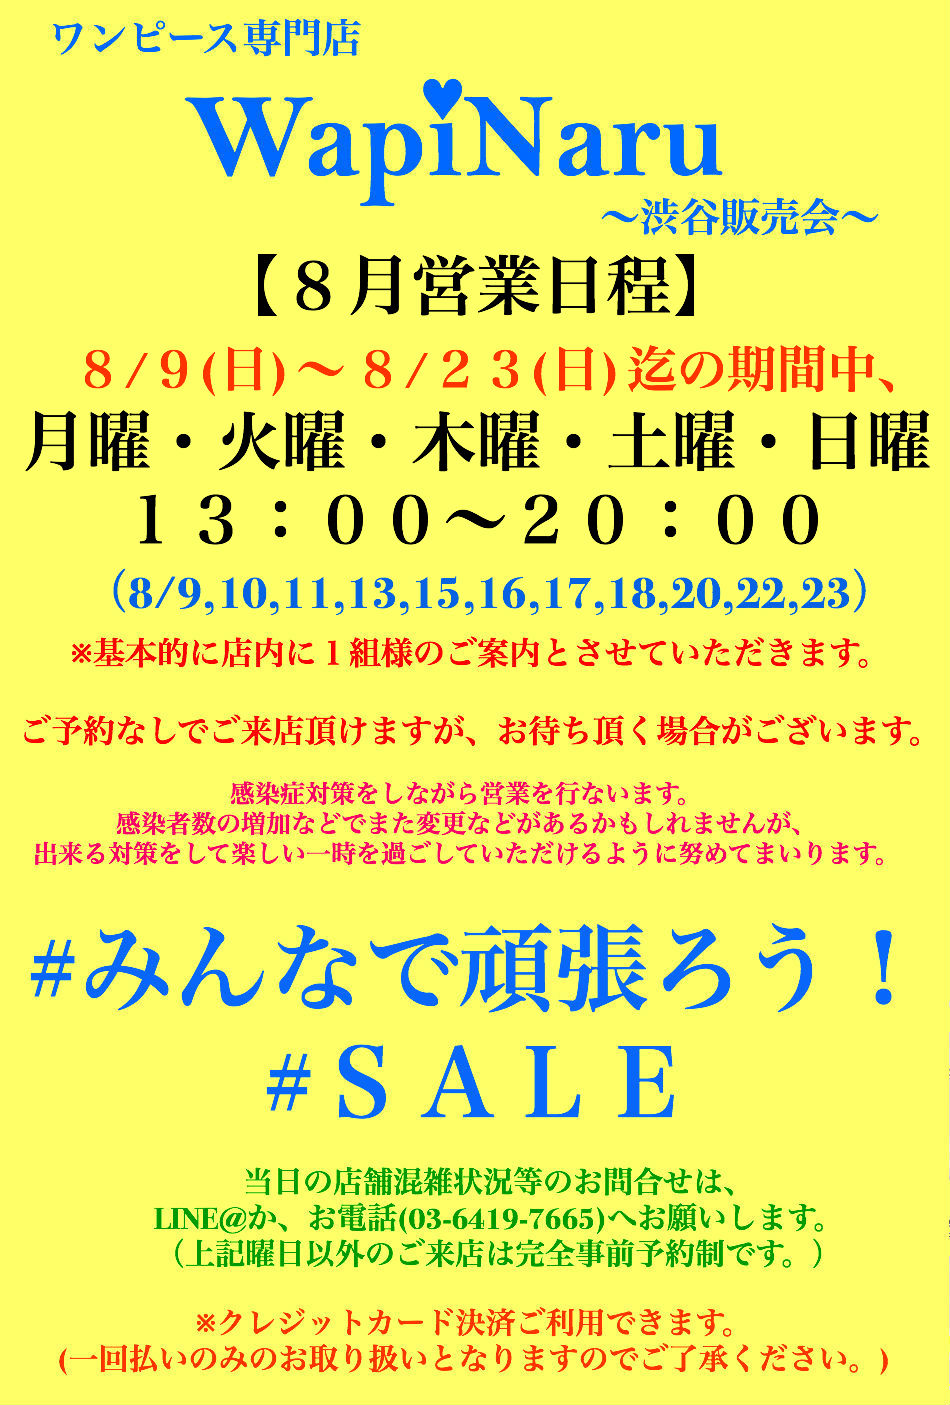 2020年8月 渋谷販売会